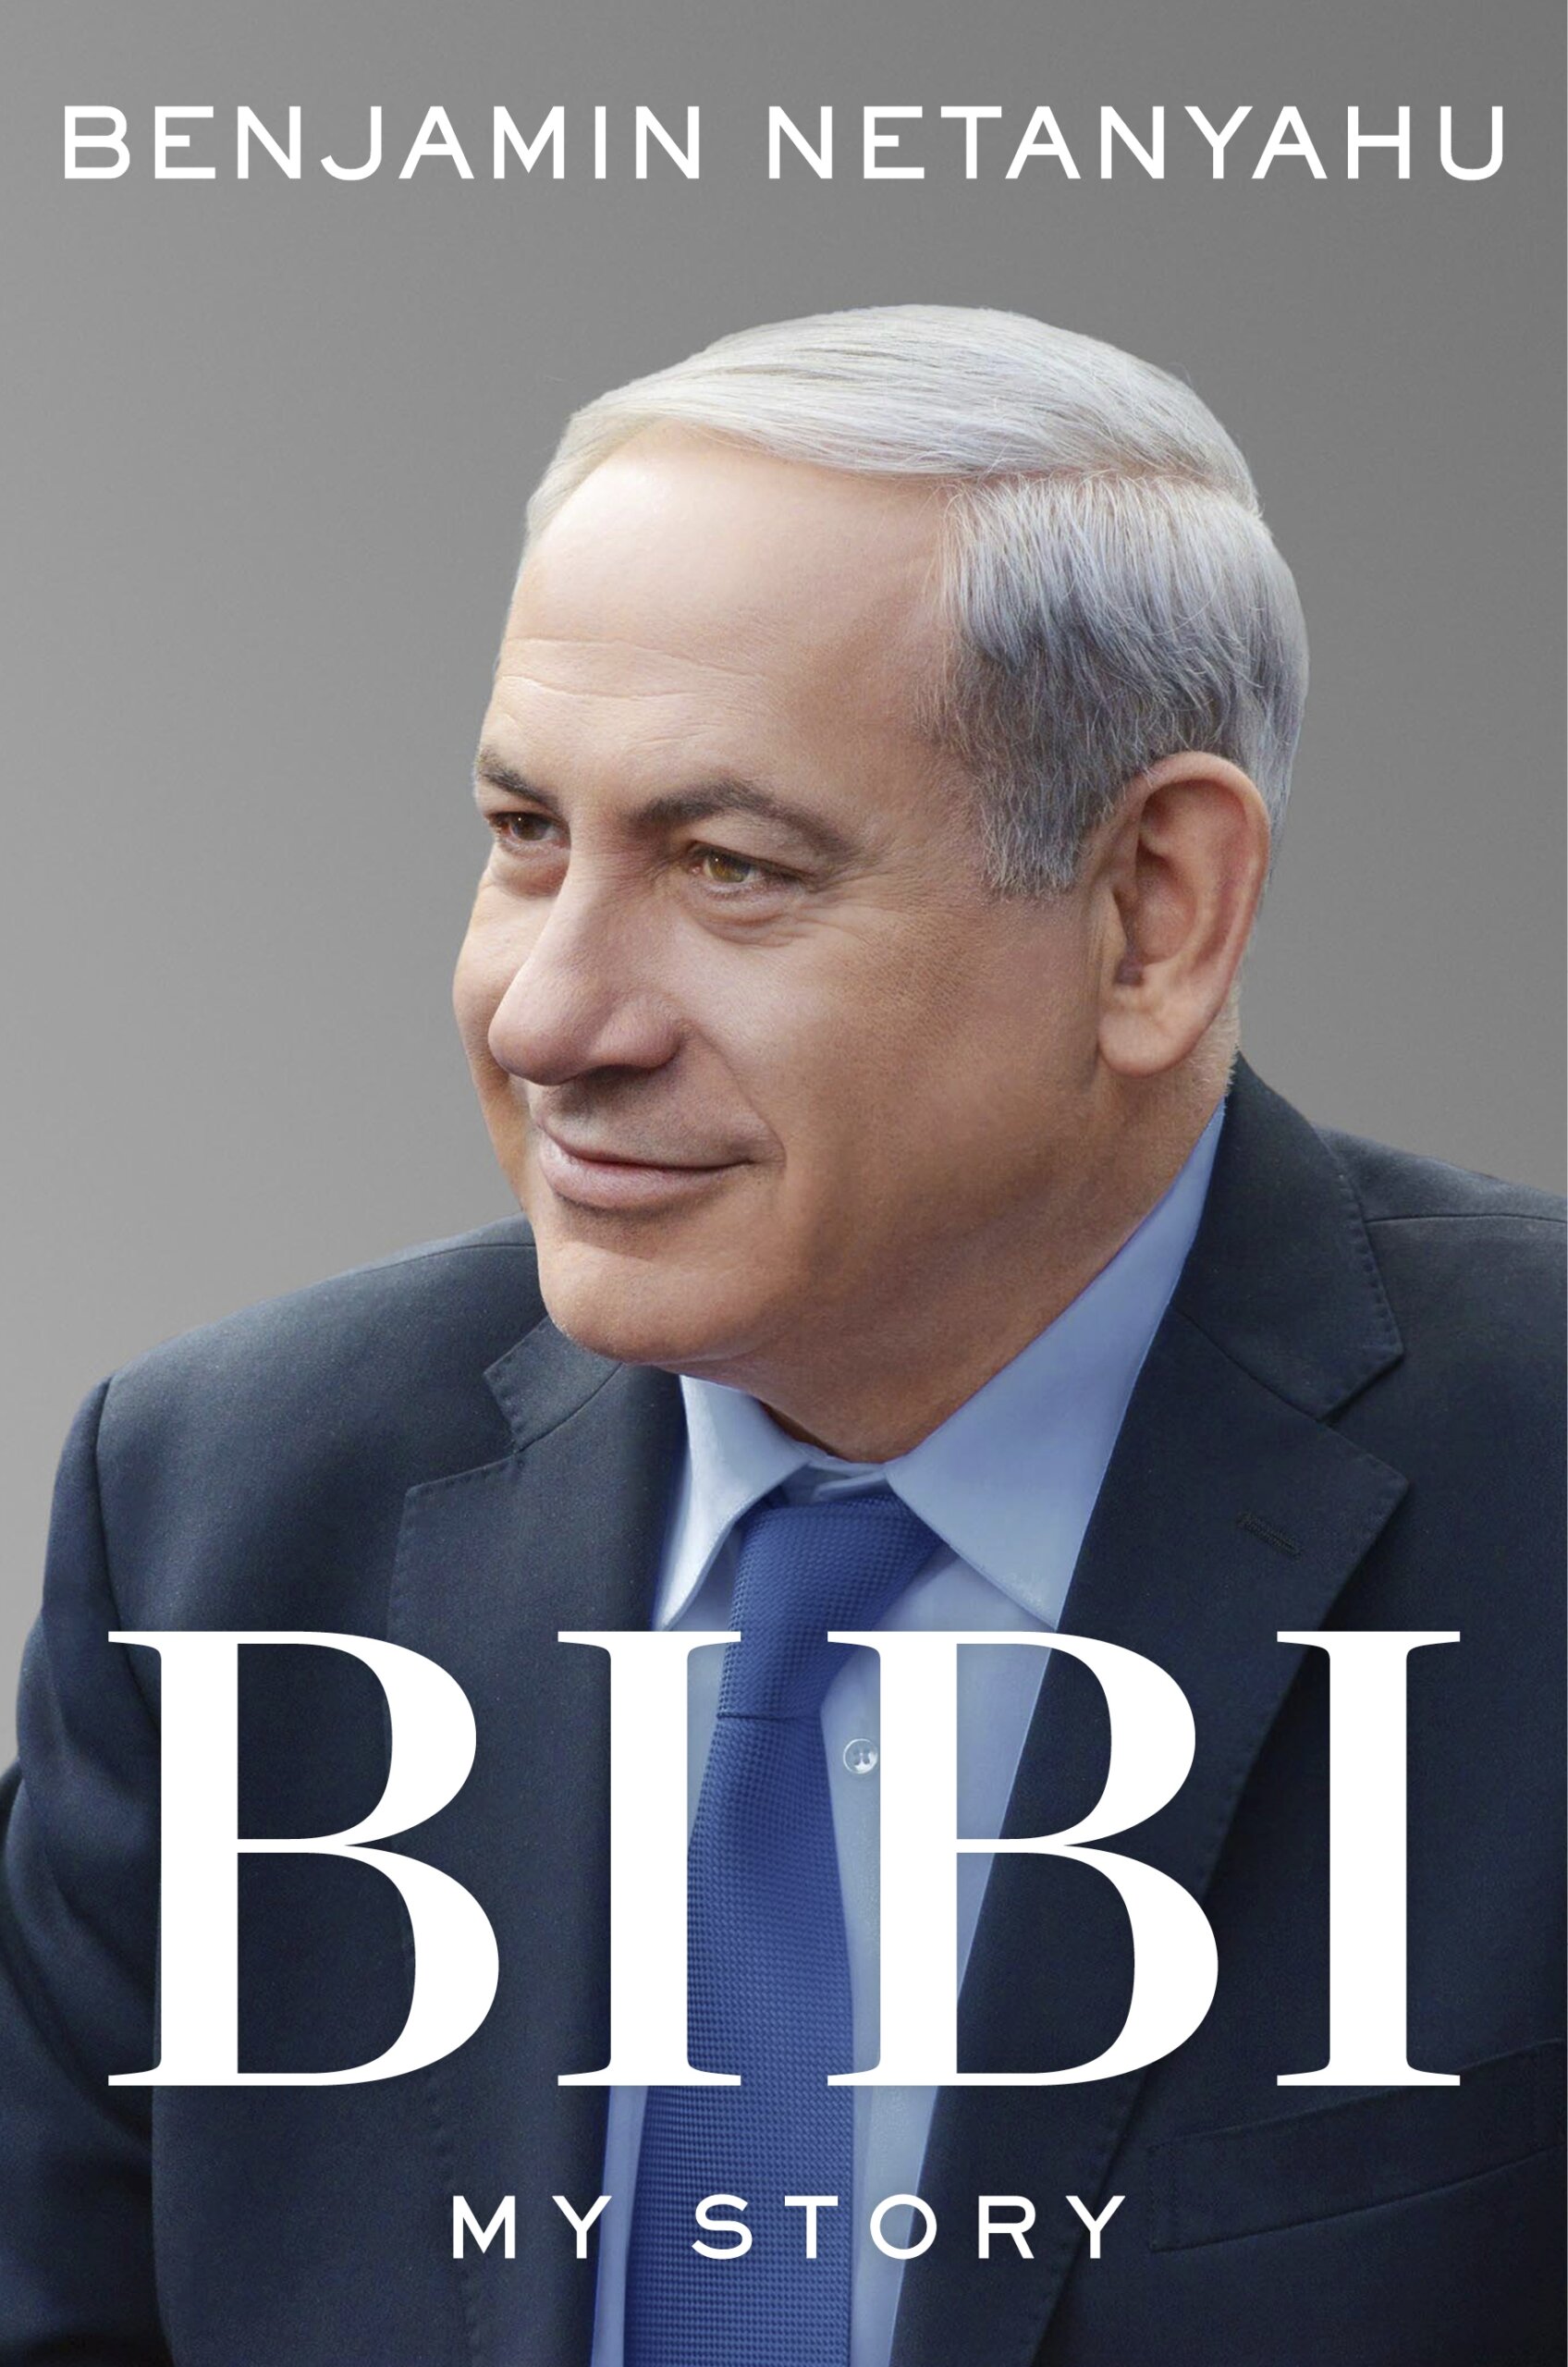 Former Israeli PM Netanyahu has memoir coming in November - WTOP News